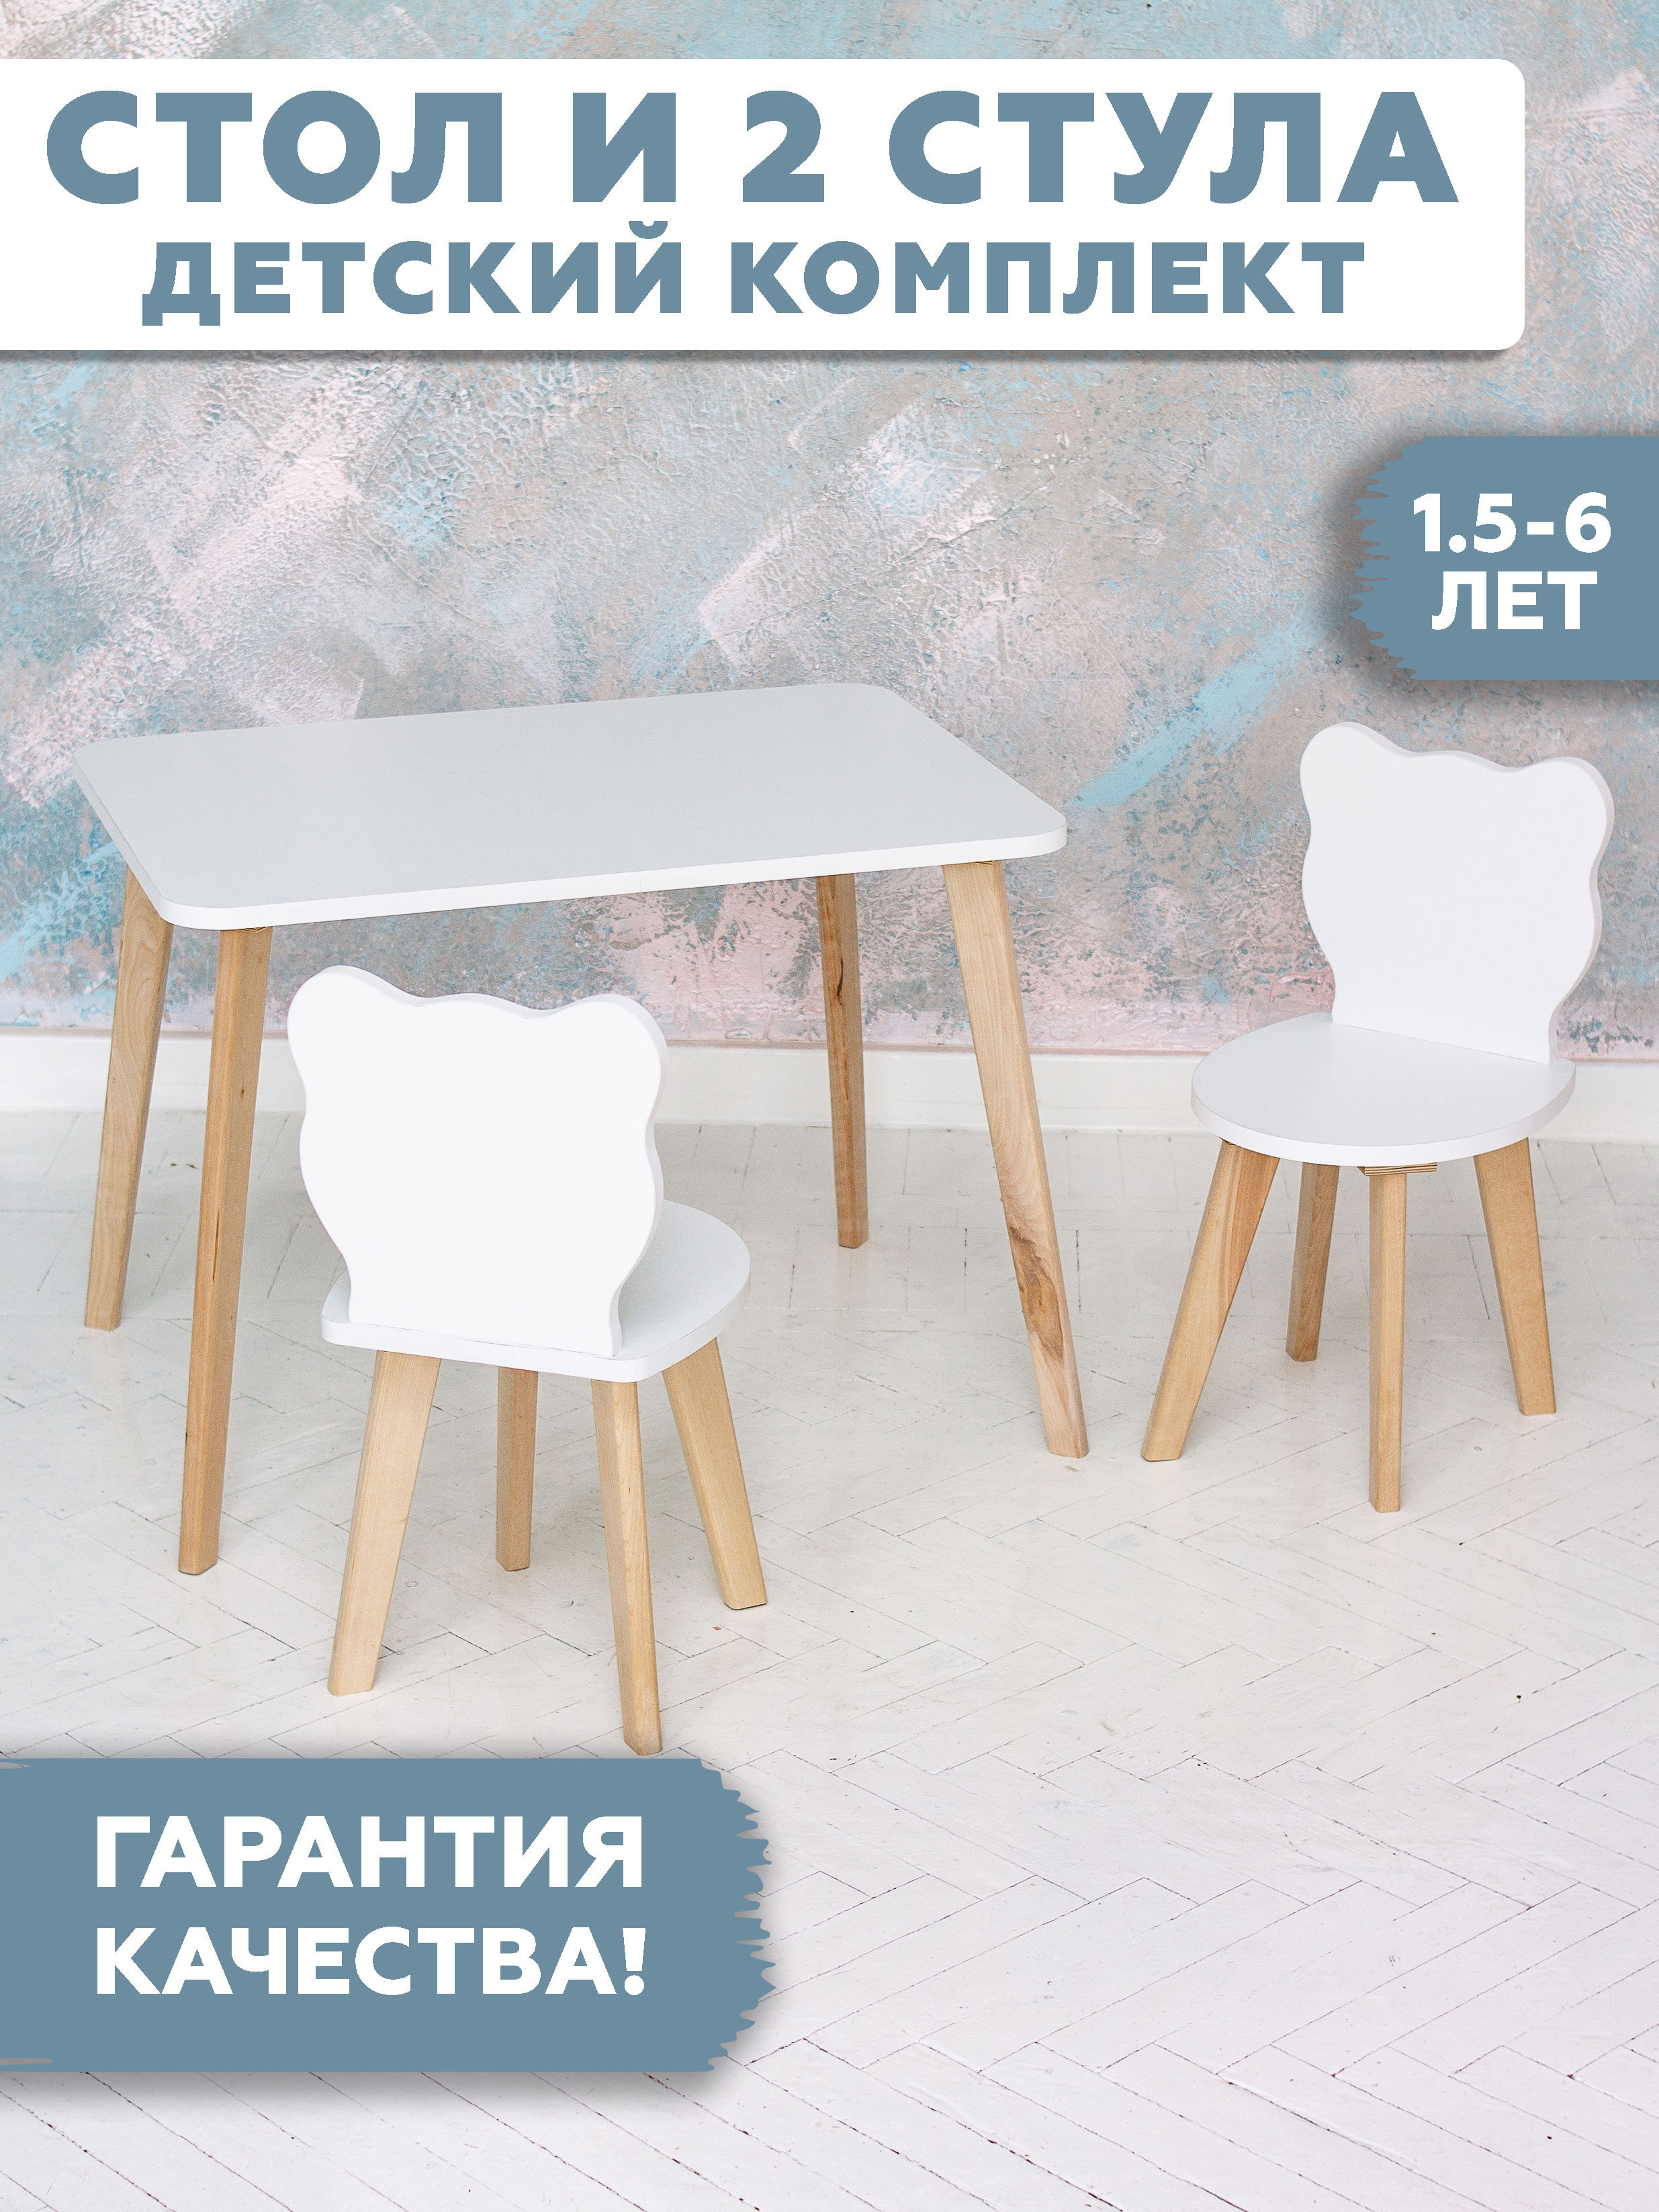 Комплект детской мебели RuLes стол прямоугольный детский и стульчики 12641